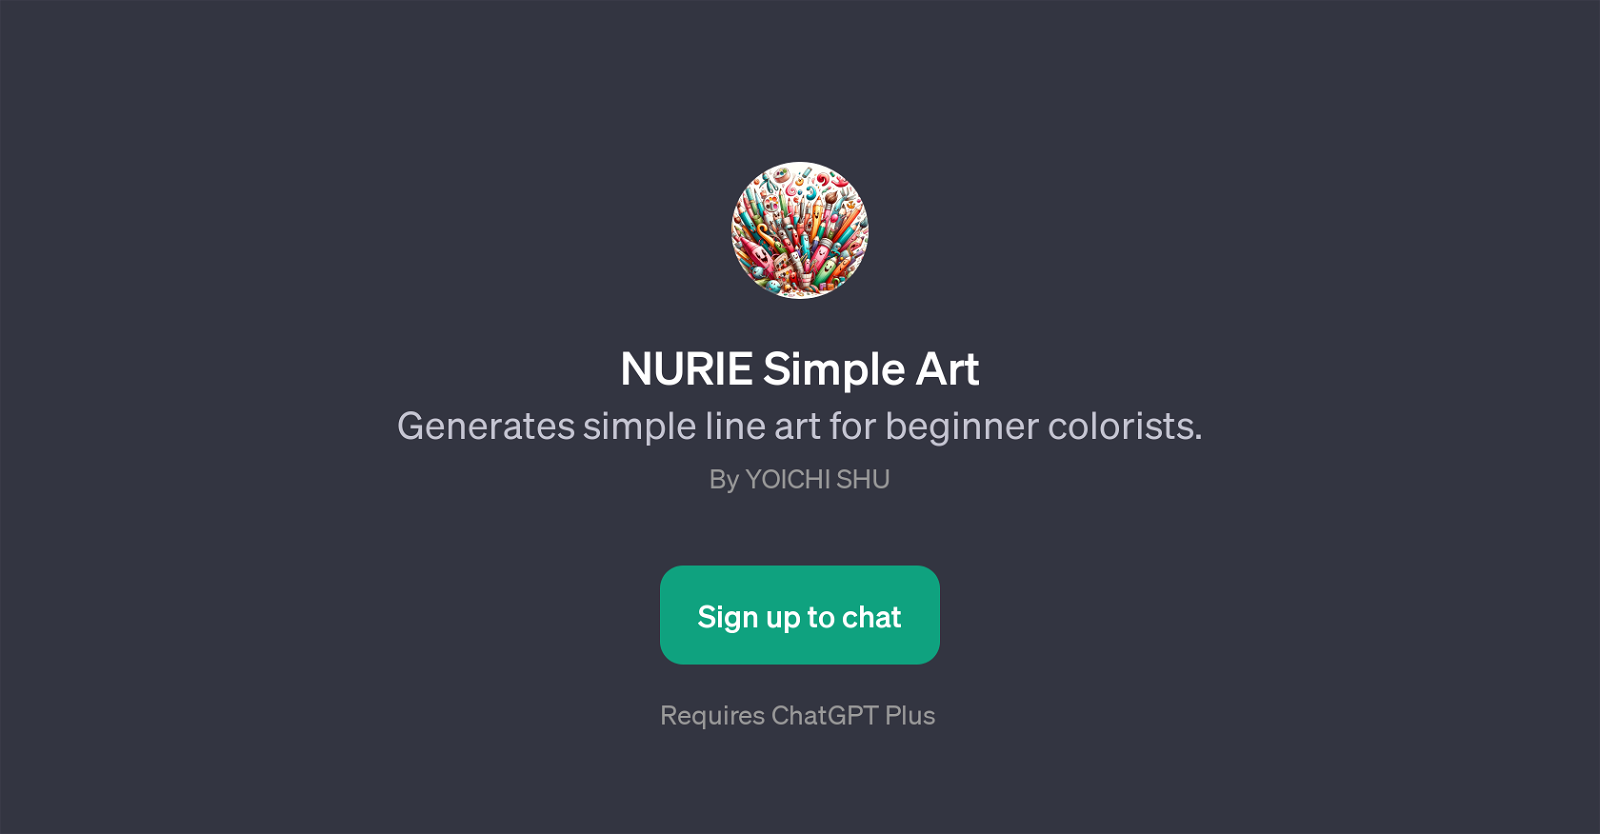 NURIE Simple Art website